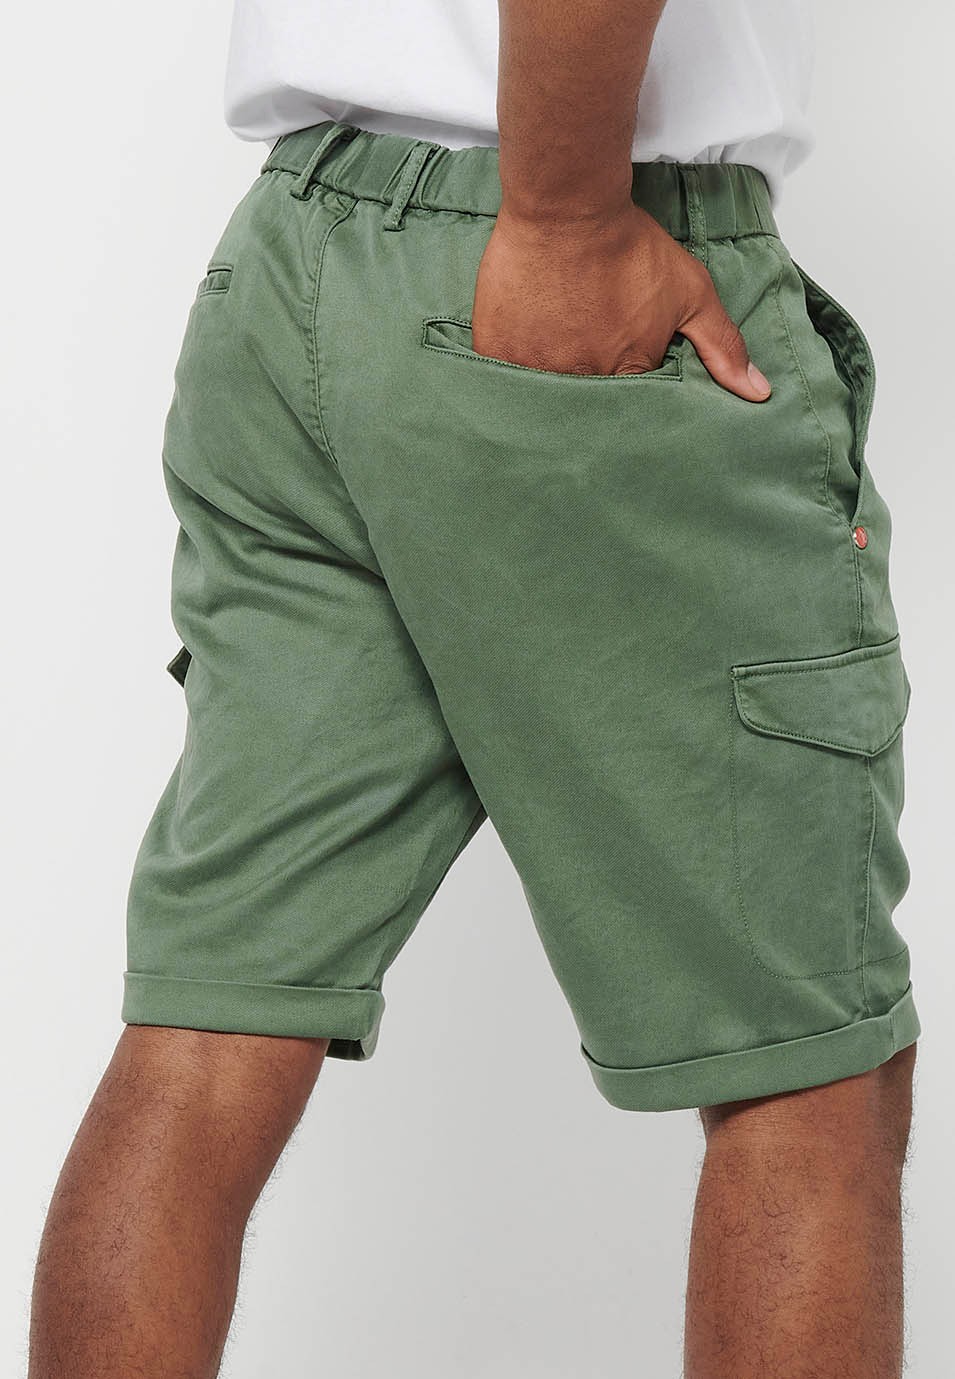 Pantalons curts amb Cintura engomada i tancament amb cremallera i botó amb Butxaques, dos laterals amb solapa de Color Verd per a Home 9